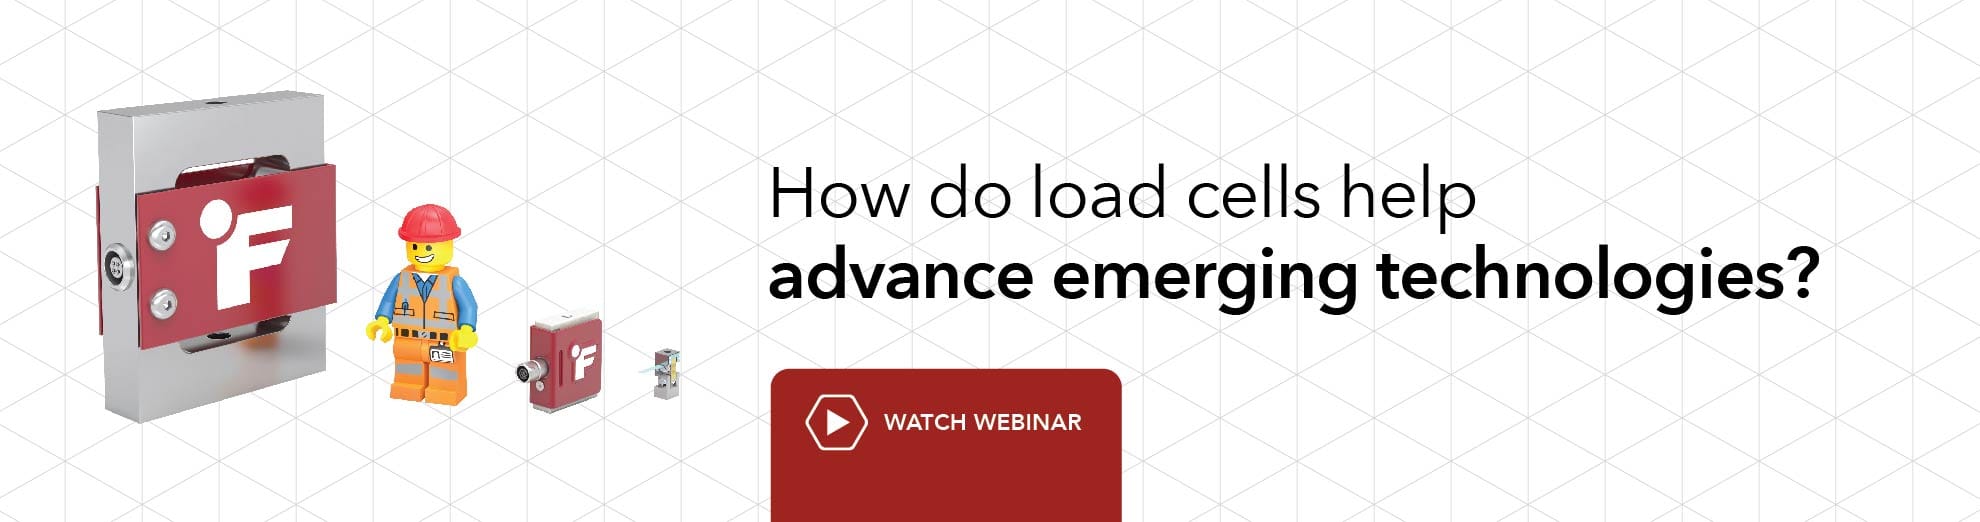 How do load cells help advance emerging technologies? Watch webinar